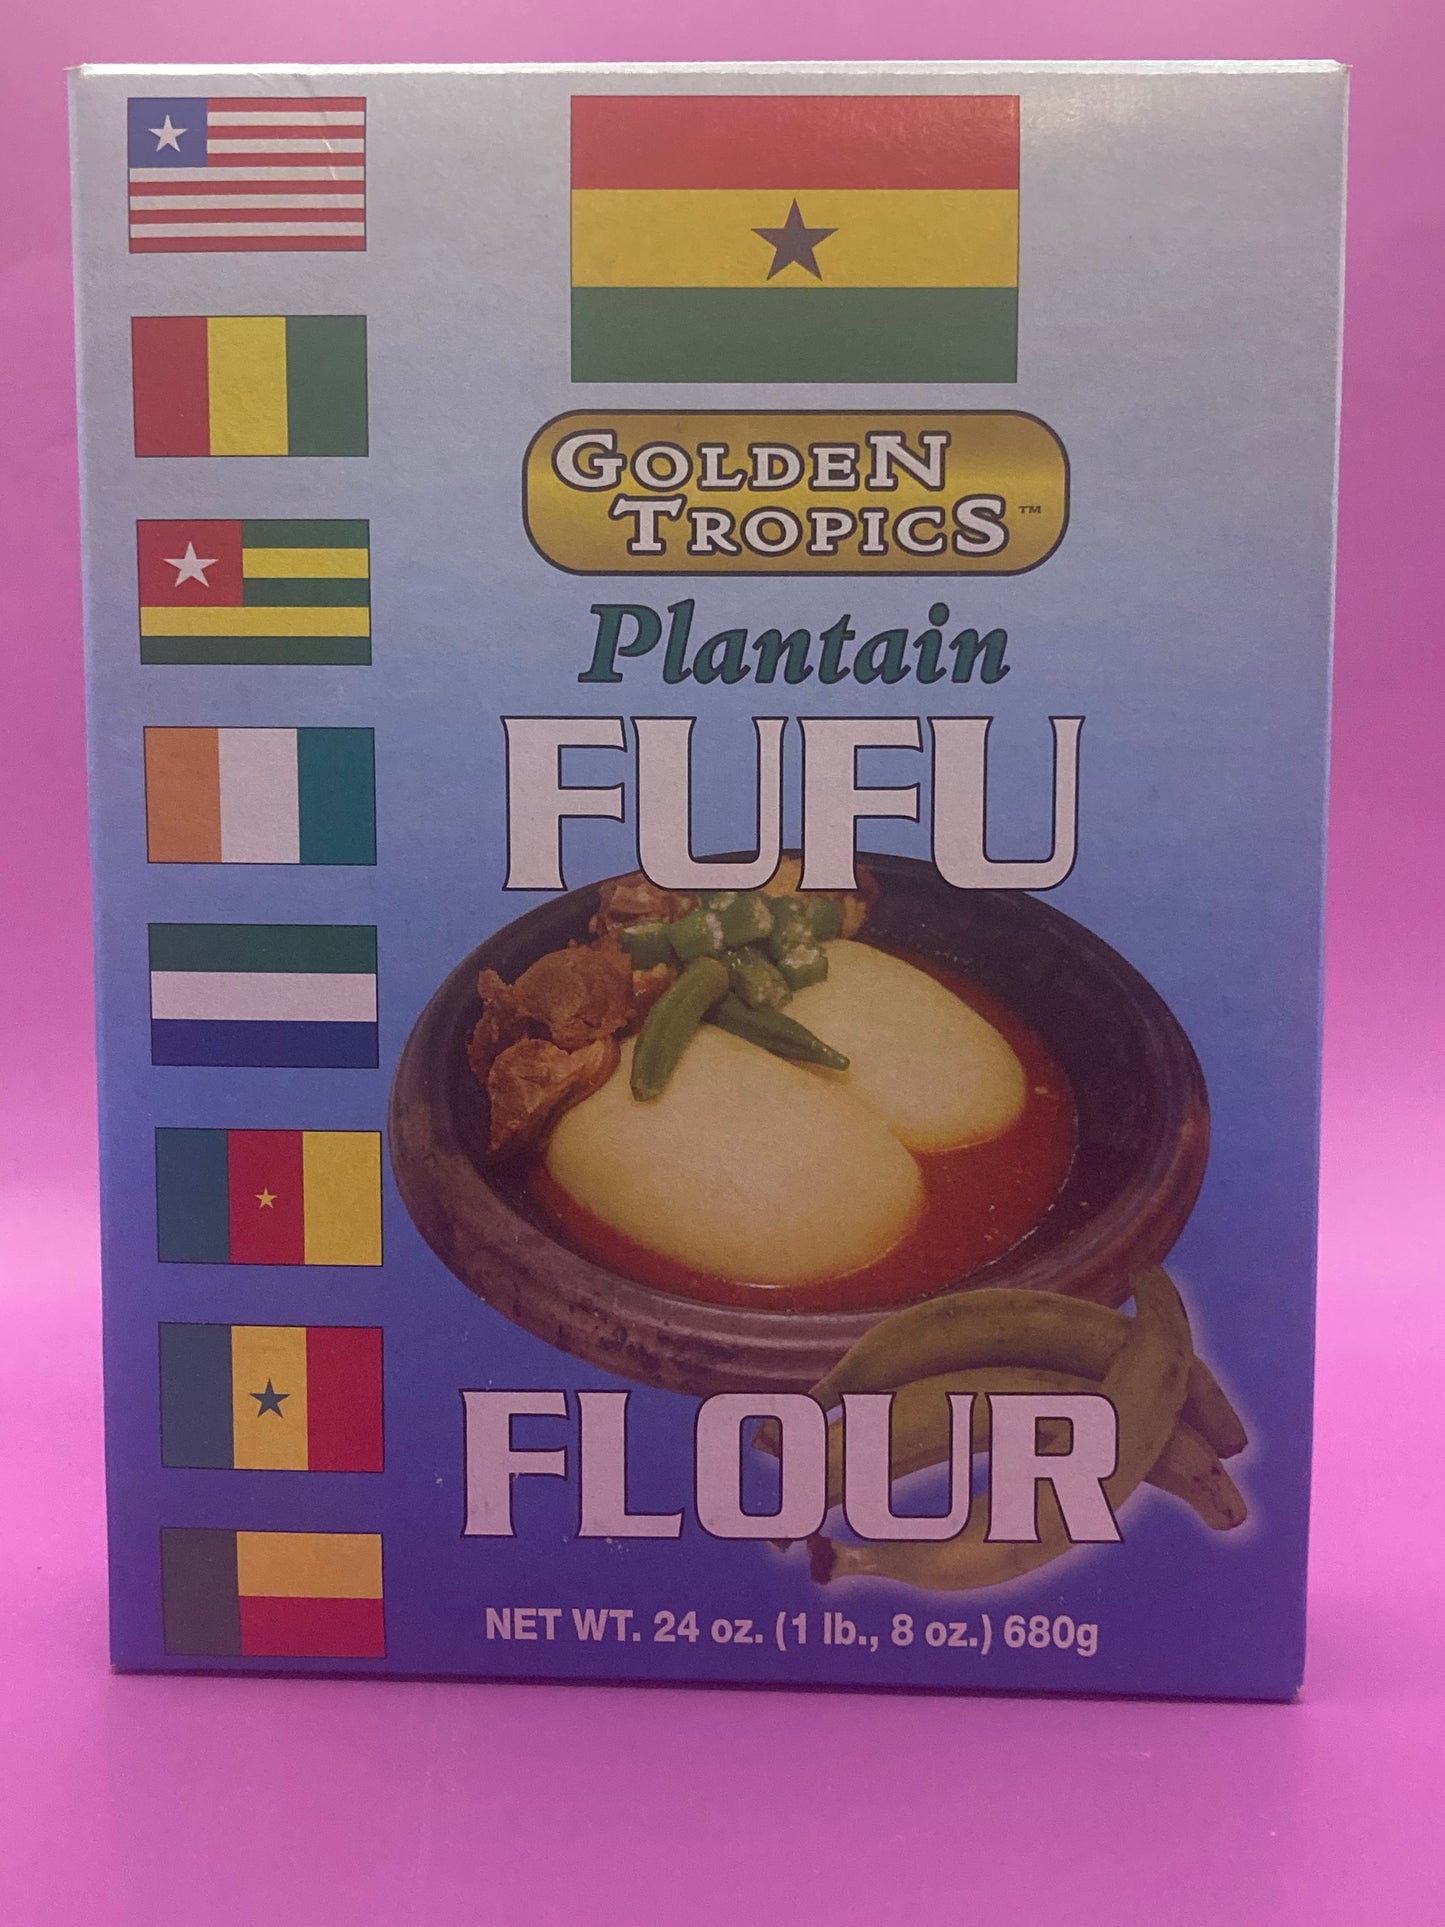 Golden Tropics Plaintain Fufu Flour 24oz